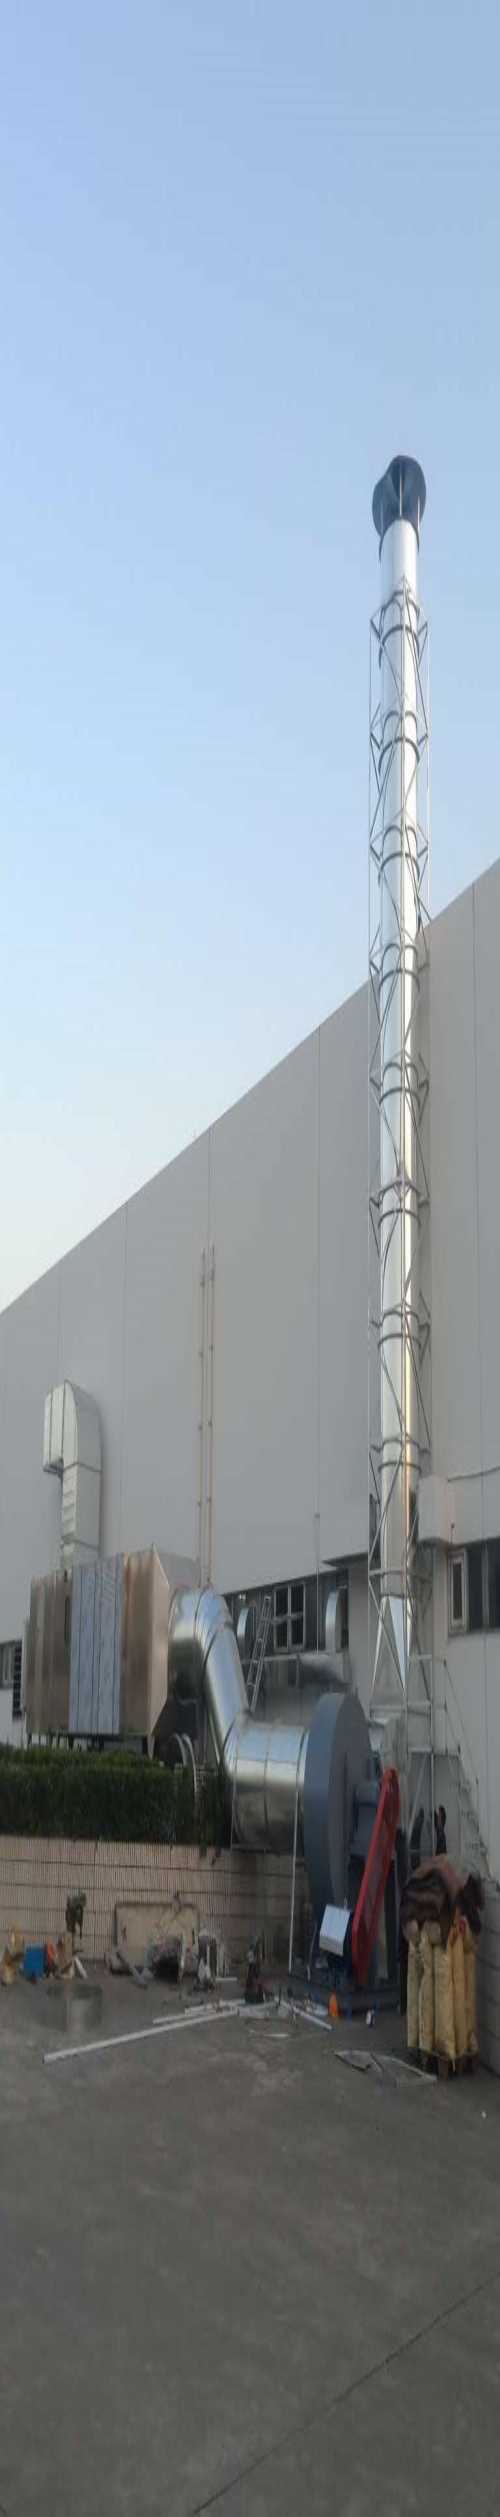 专业白铁皮通风管道系统|上海山优暖通制作|上海市区白铁皮通风管道加工